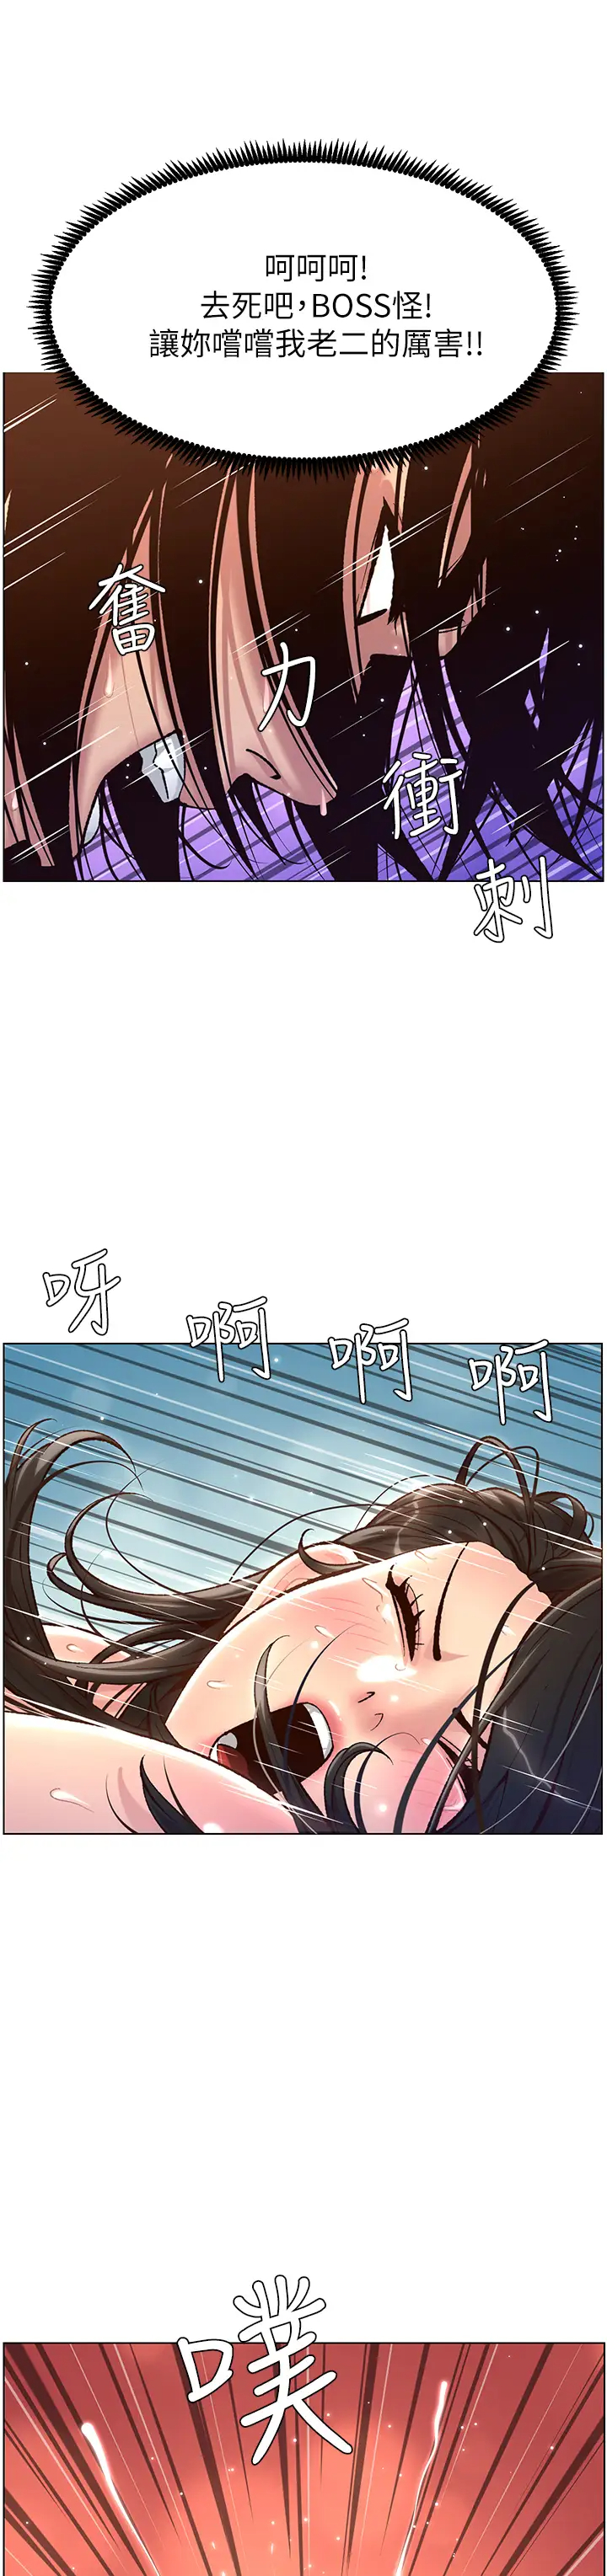 韩国污漫画 帝王App 第3话 让你爽到不要不要 34